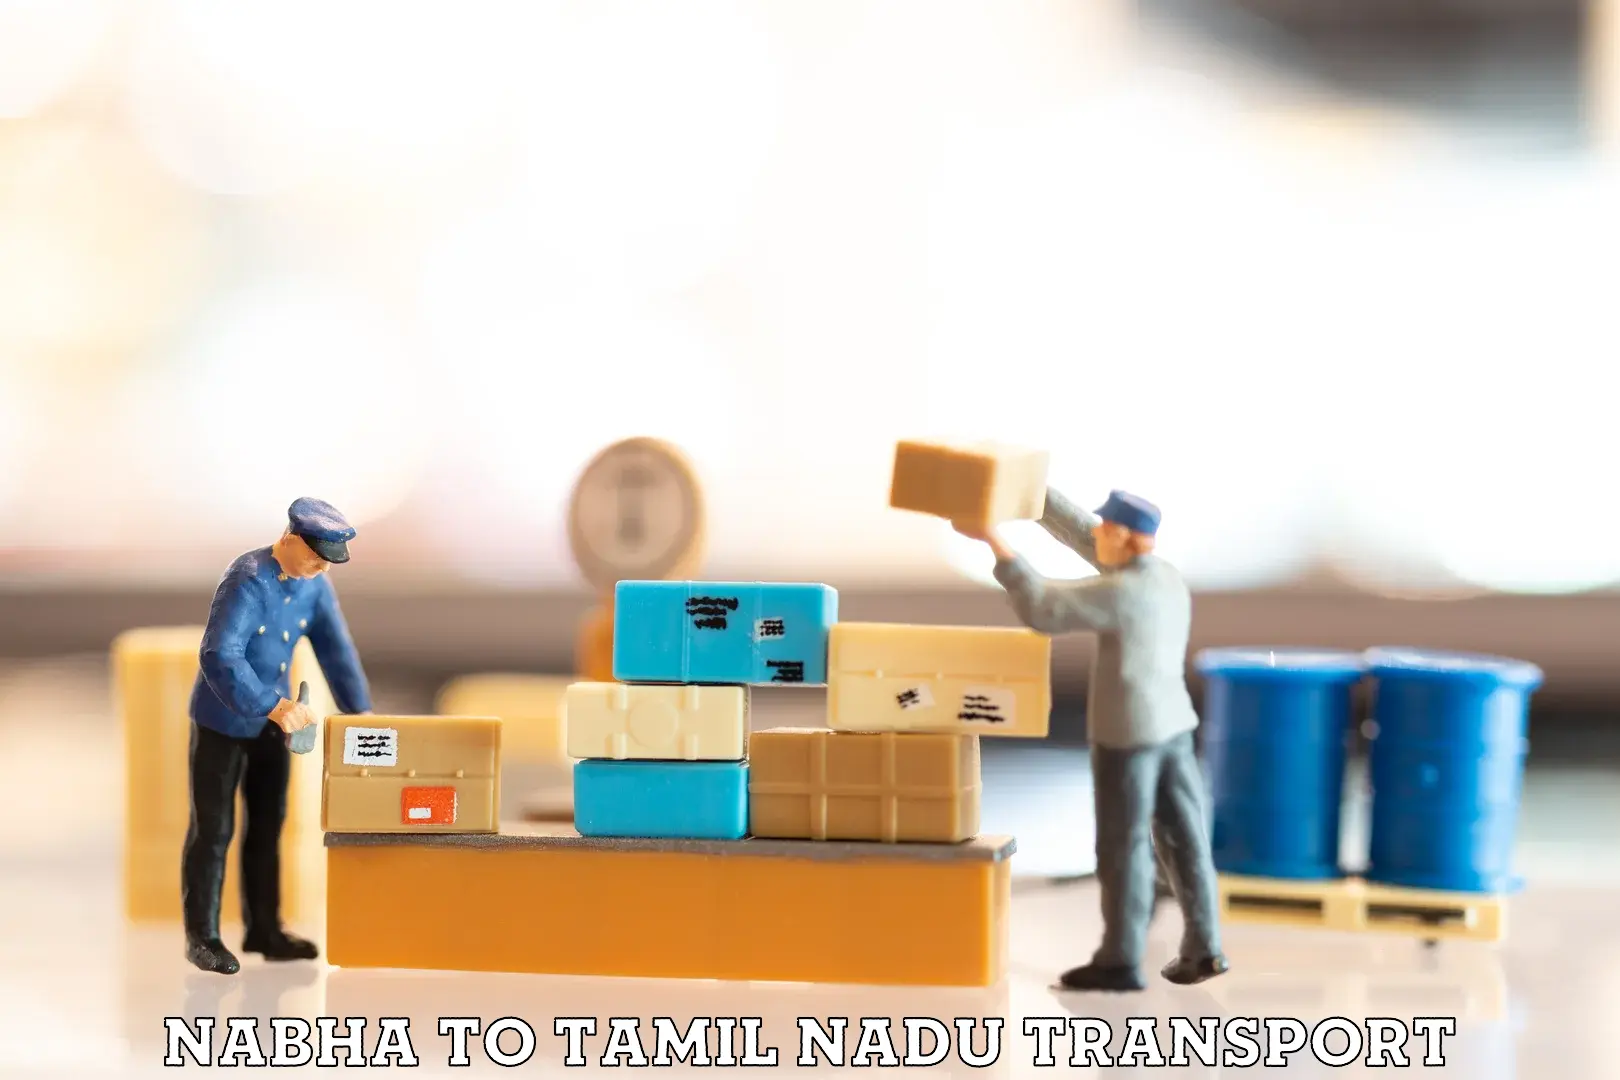 Lorry transport service Nabha to Tiruturaipundi